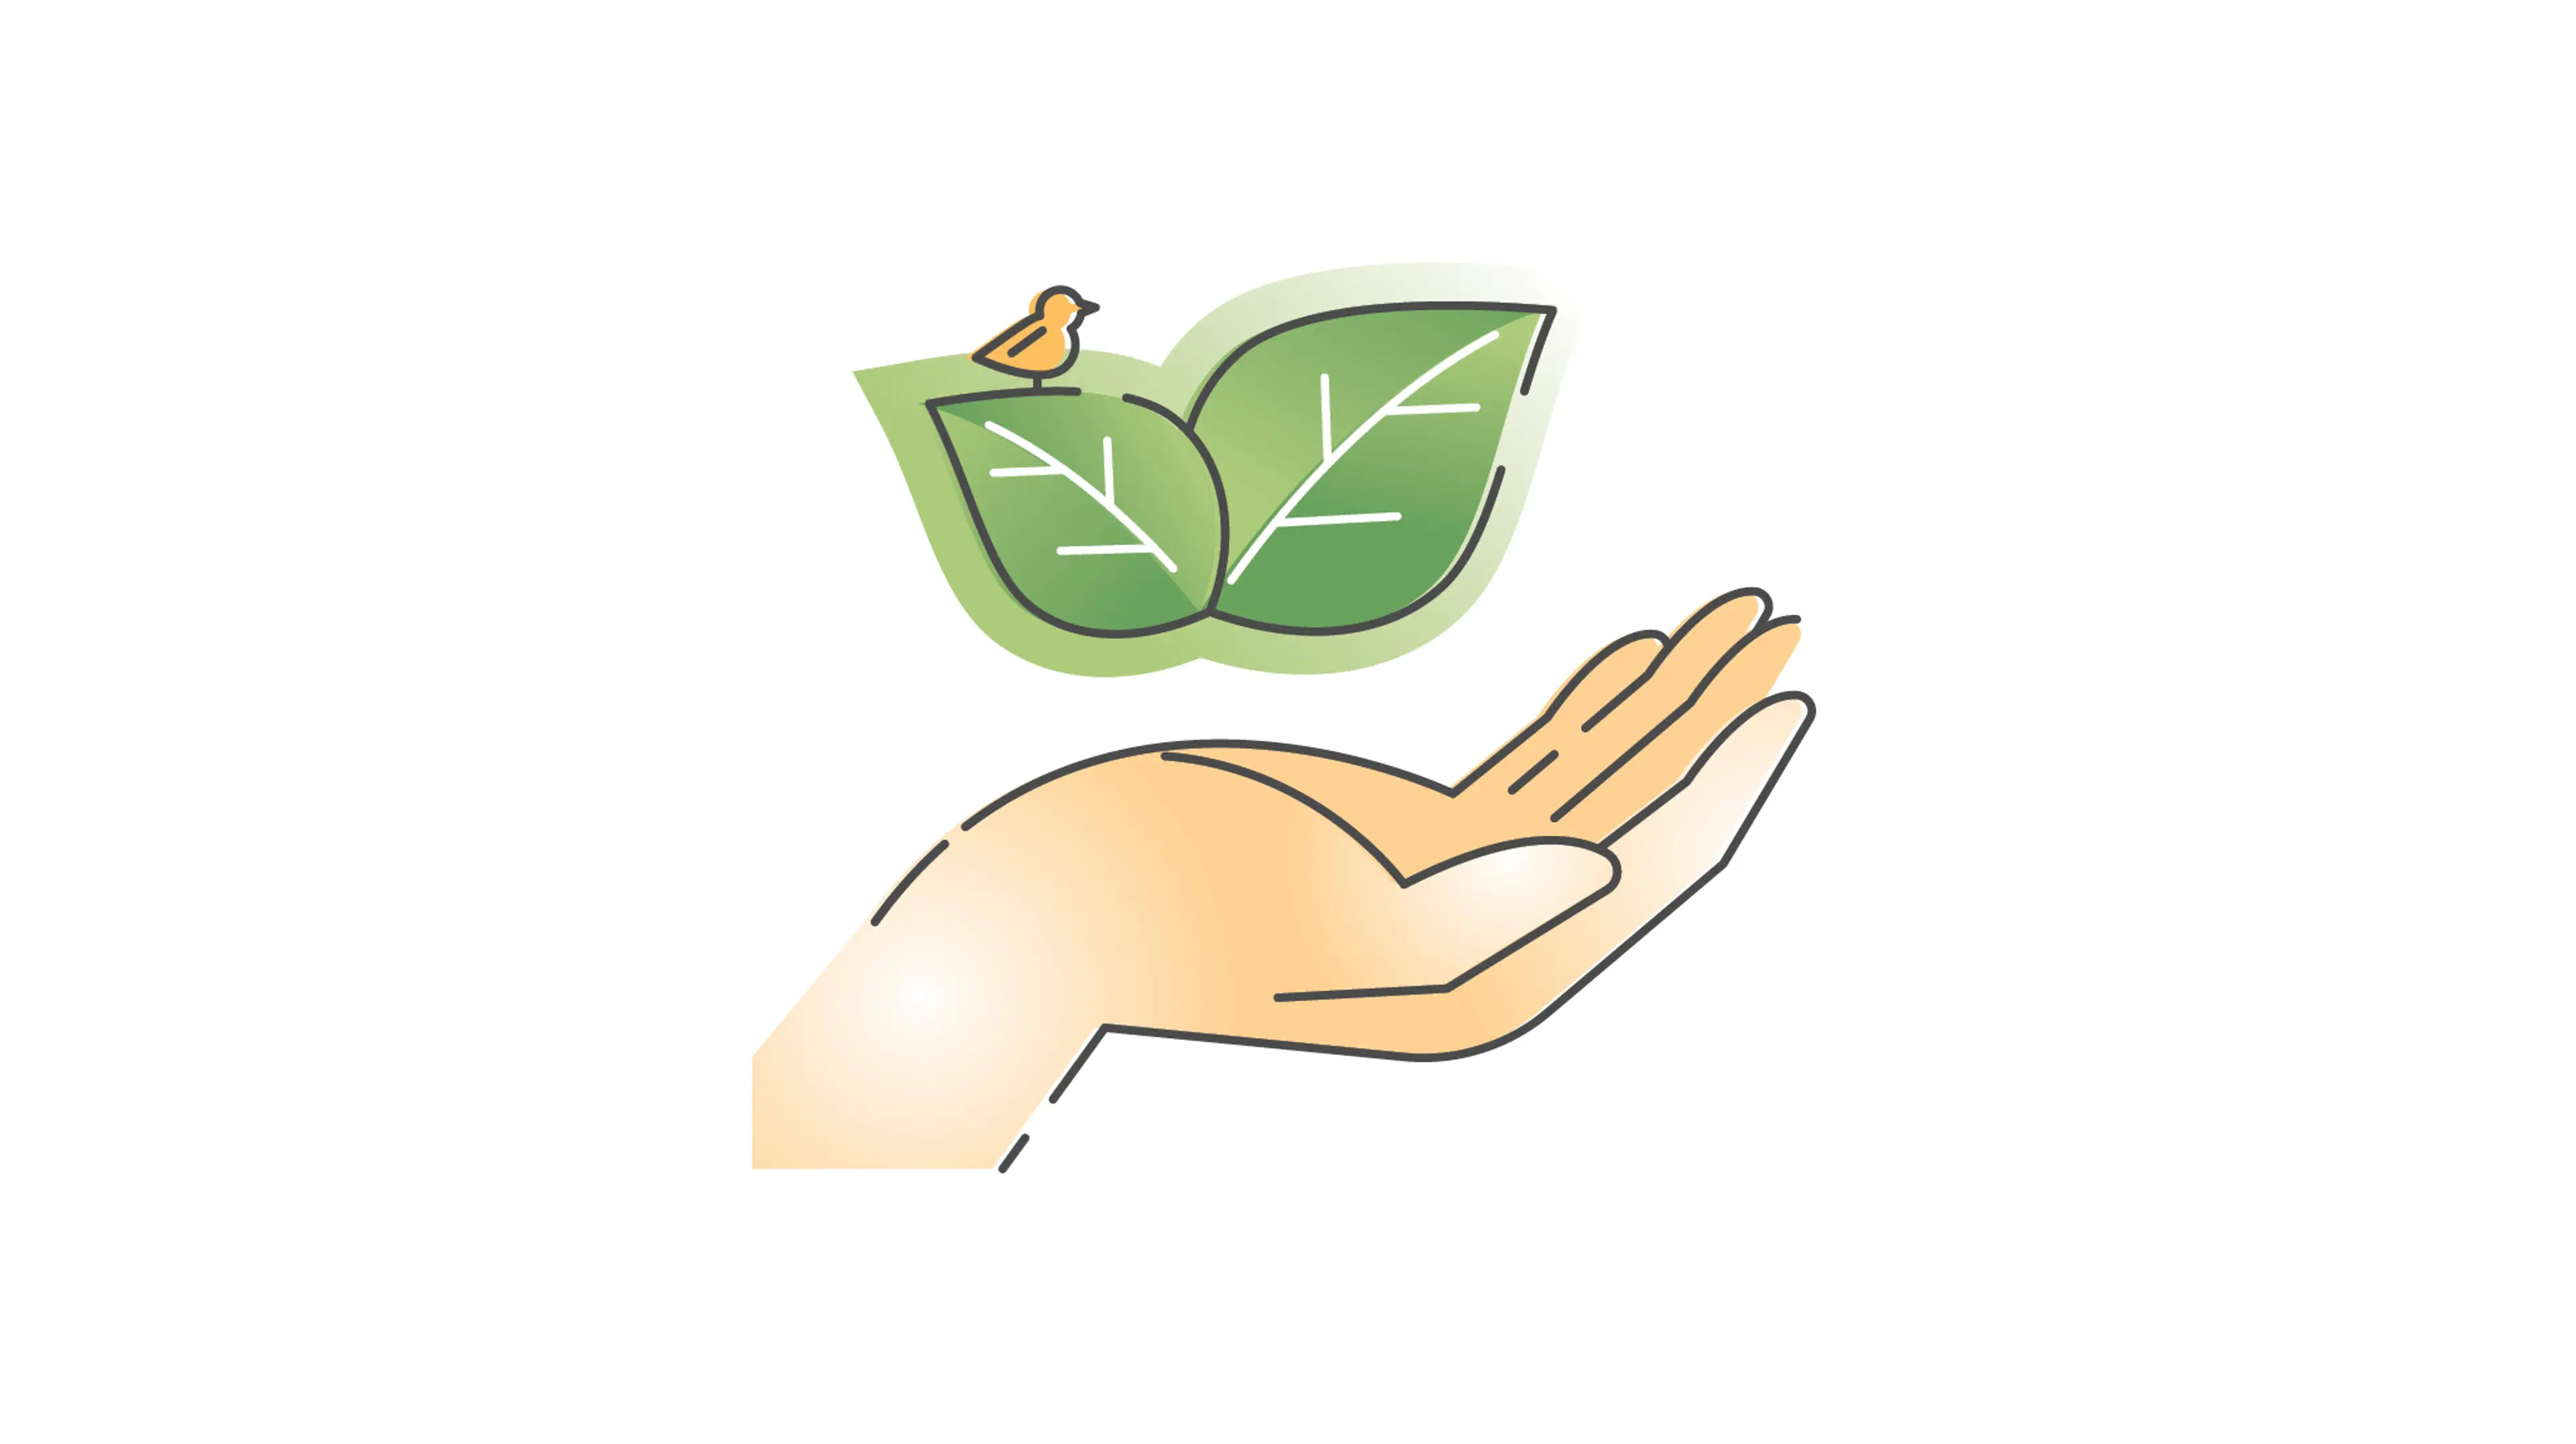 Miljø og bærekraft illustrert med hender og grønne blader